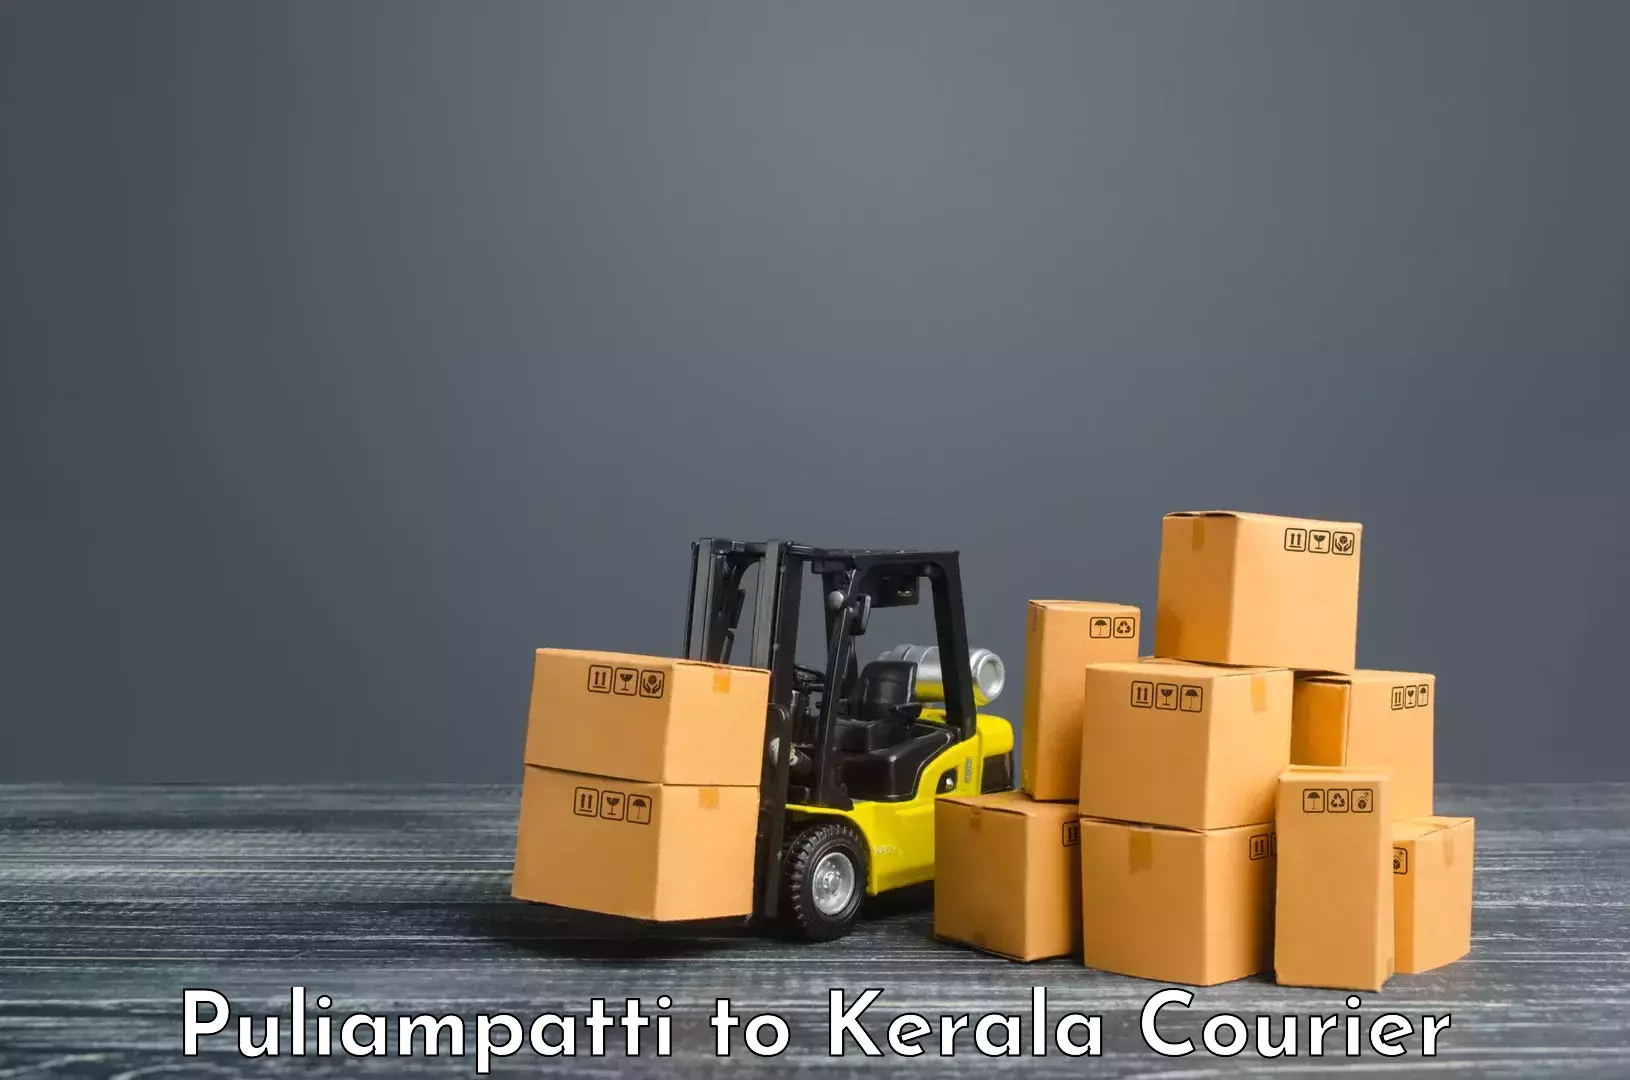 On-call courier service Puliampatti to Cochin Port Kochi